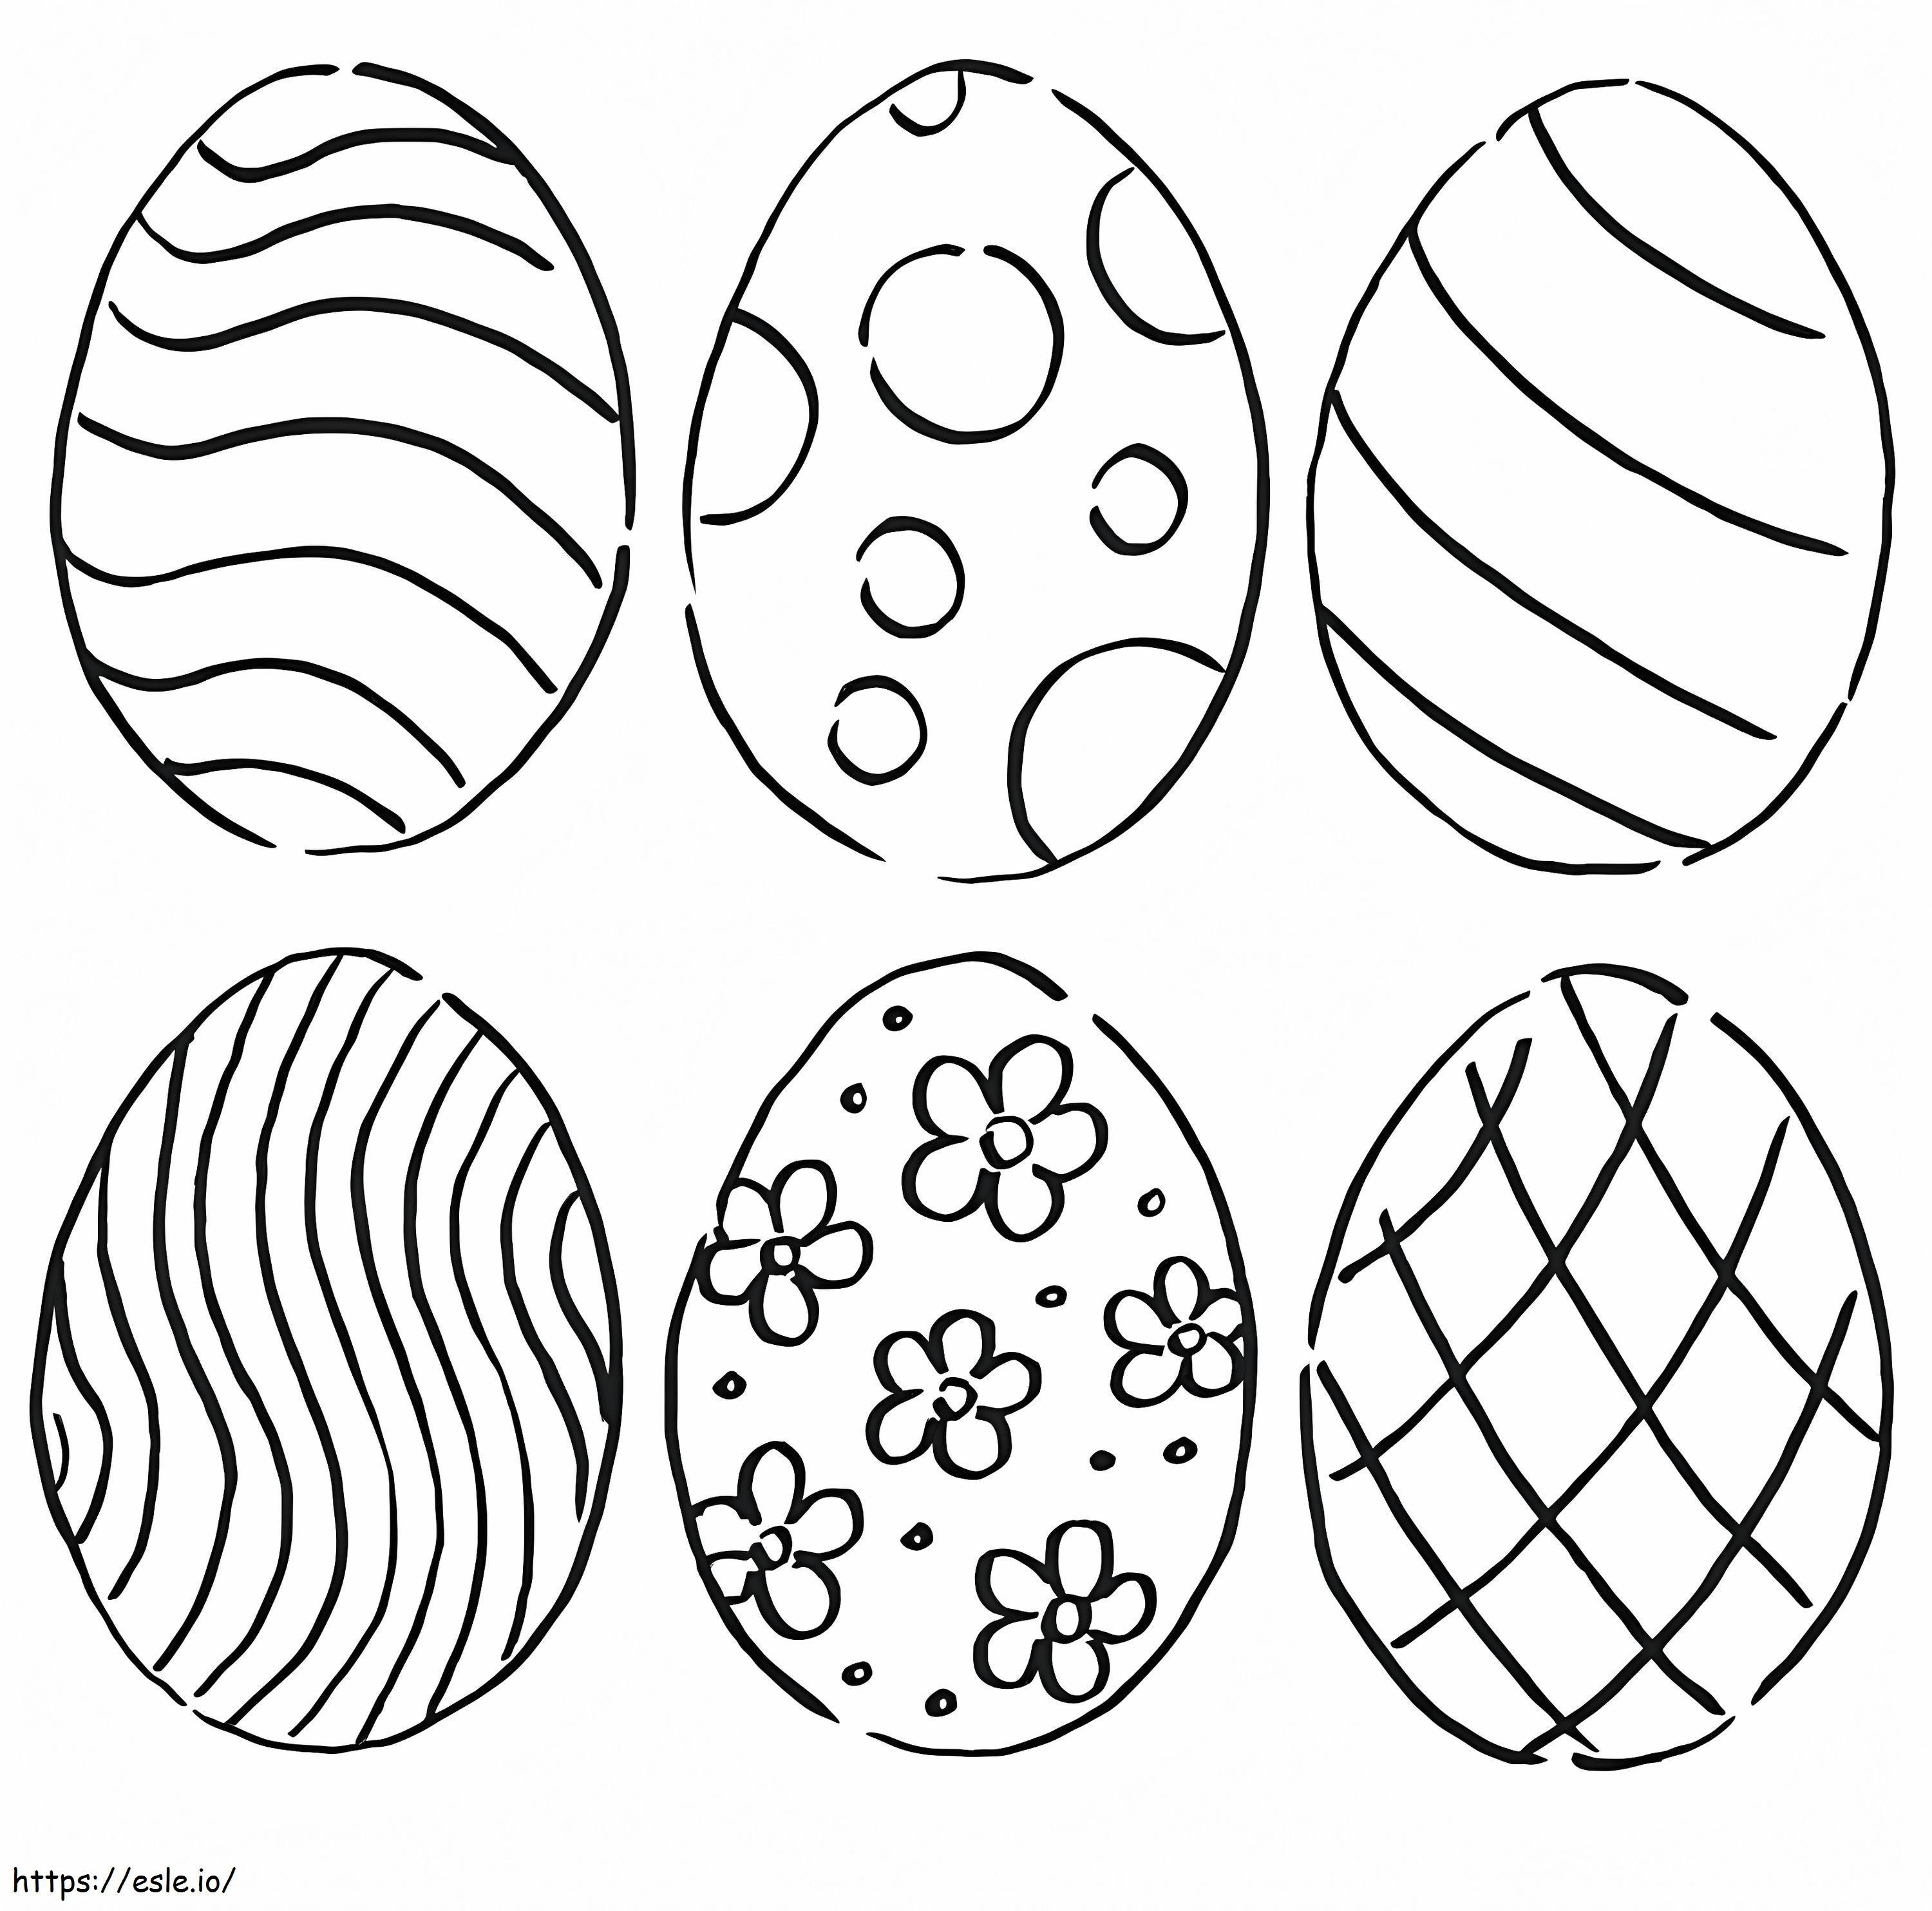 Húsvéti tojások 6 kifestő